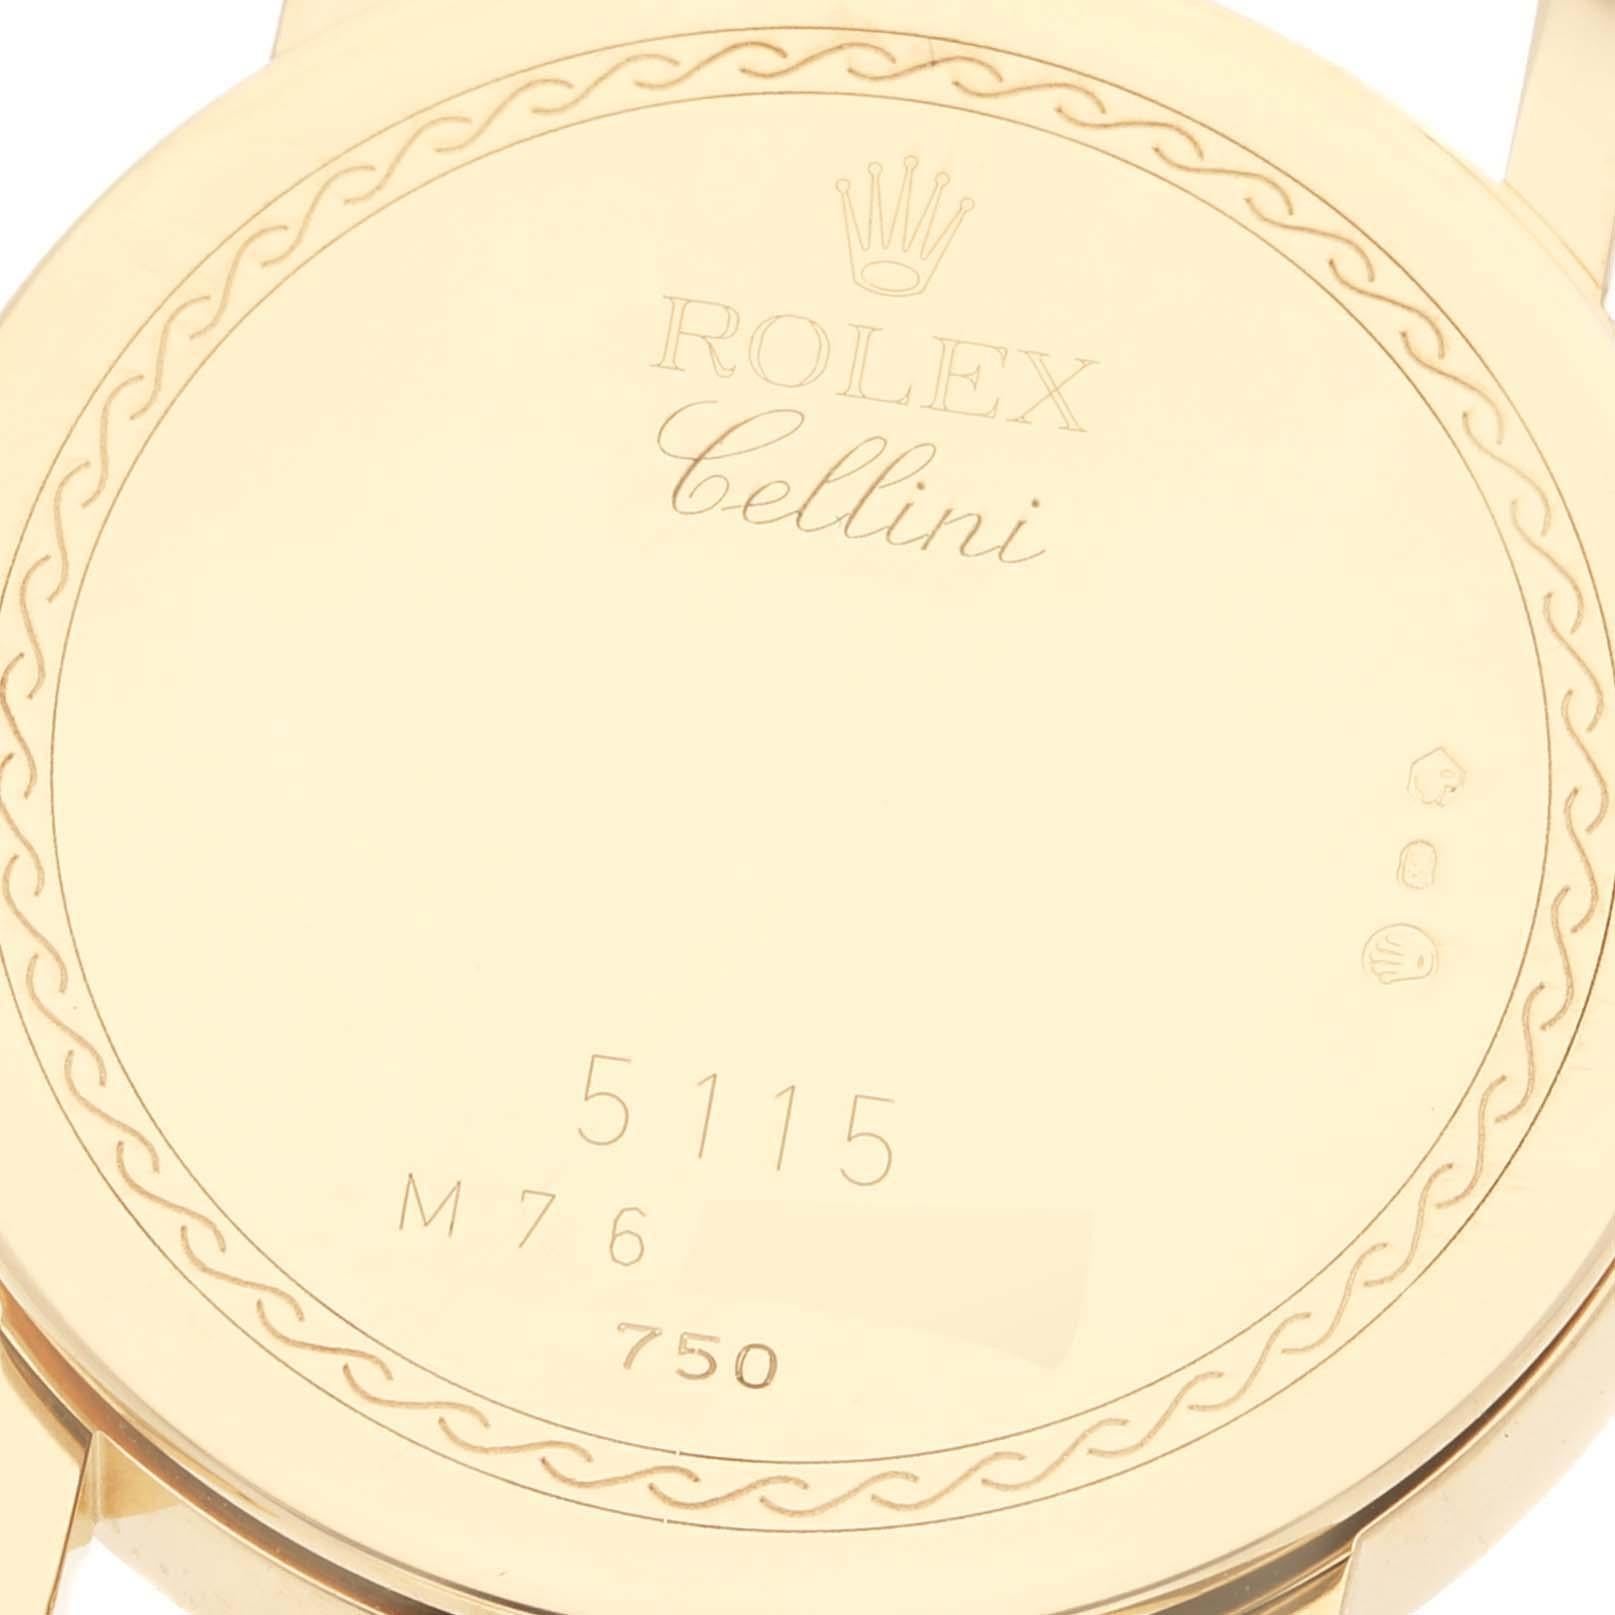 Rolex Cellini Classic Yellow Gold Ivory Anniversary Dial Montre homme 5115. Mouvement à remontage manuel. Boîtier fin en or jaune 18 carats de 32 mm de diamètre. Epaisseur du boîtier : 5,5 mm. Logo Rolex sur la couronne . Verre saphir résistant aux